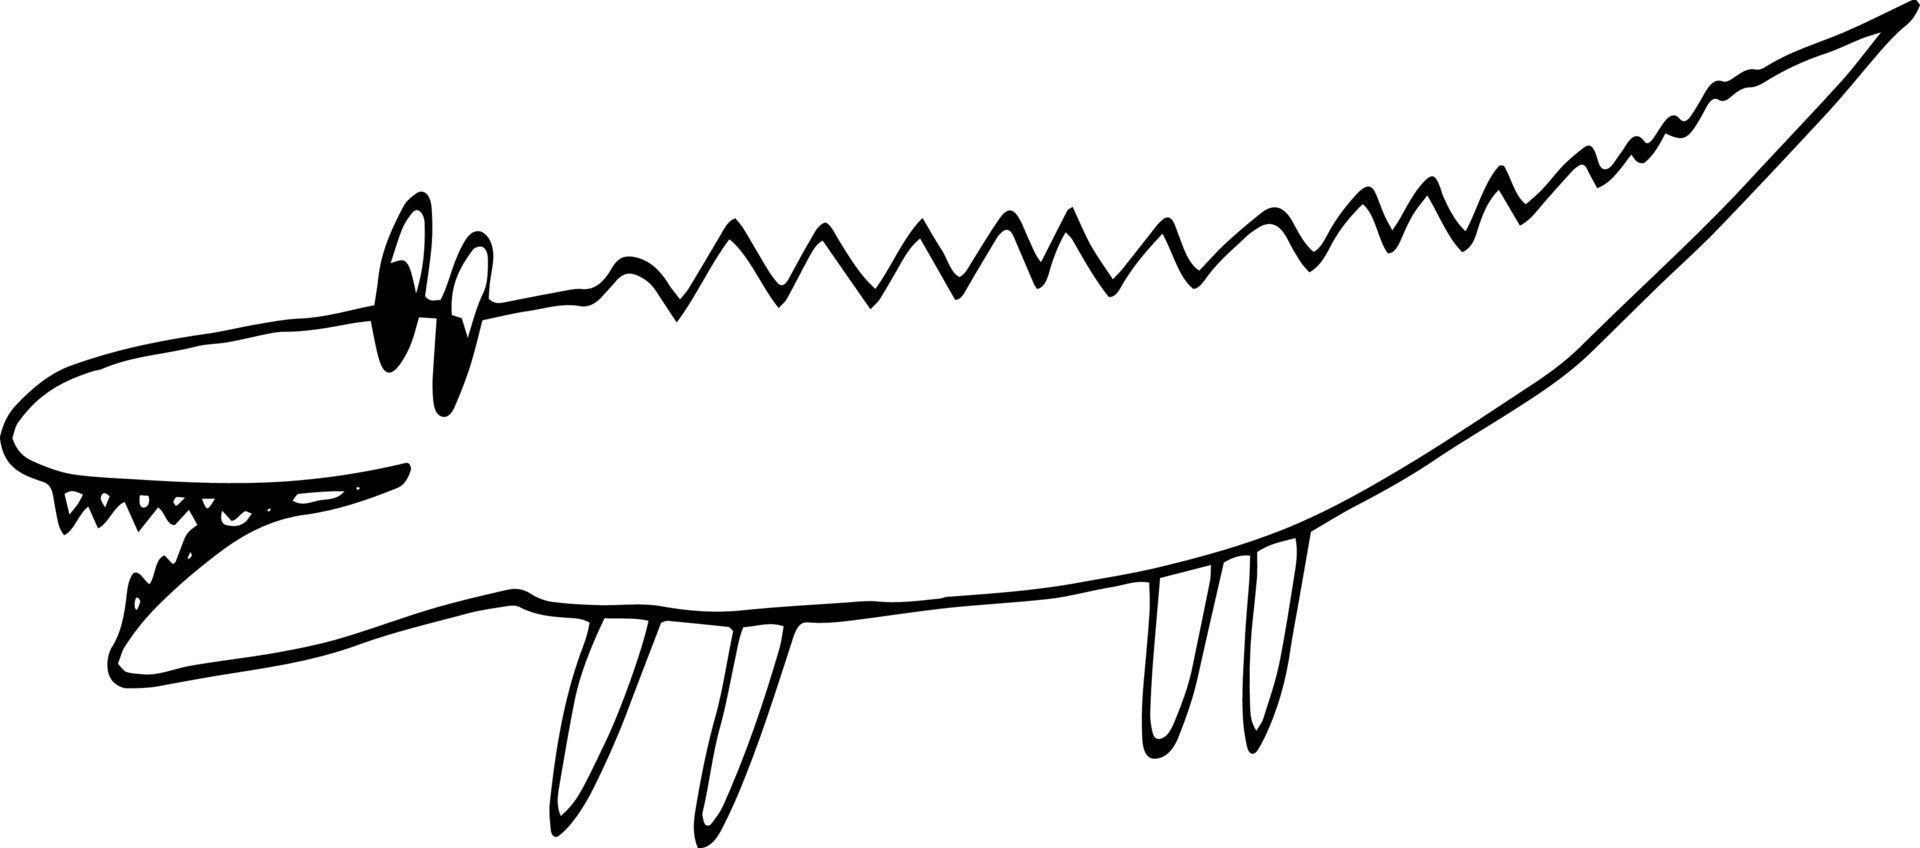 crocodilo desenhado à mão doodle. escandinavo, nórdico, minimalismo, monocromático. coloração de decoração de desenho de bebê fofo animal vetor